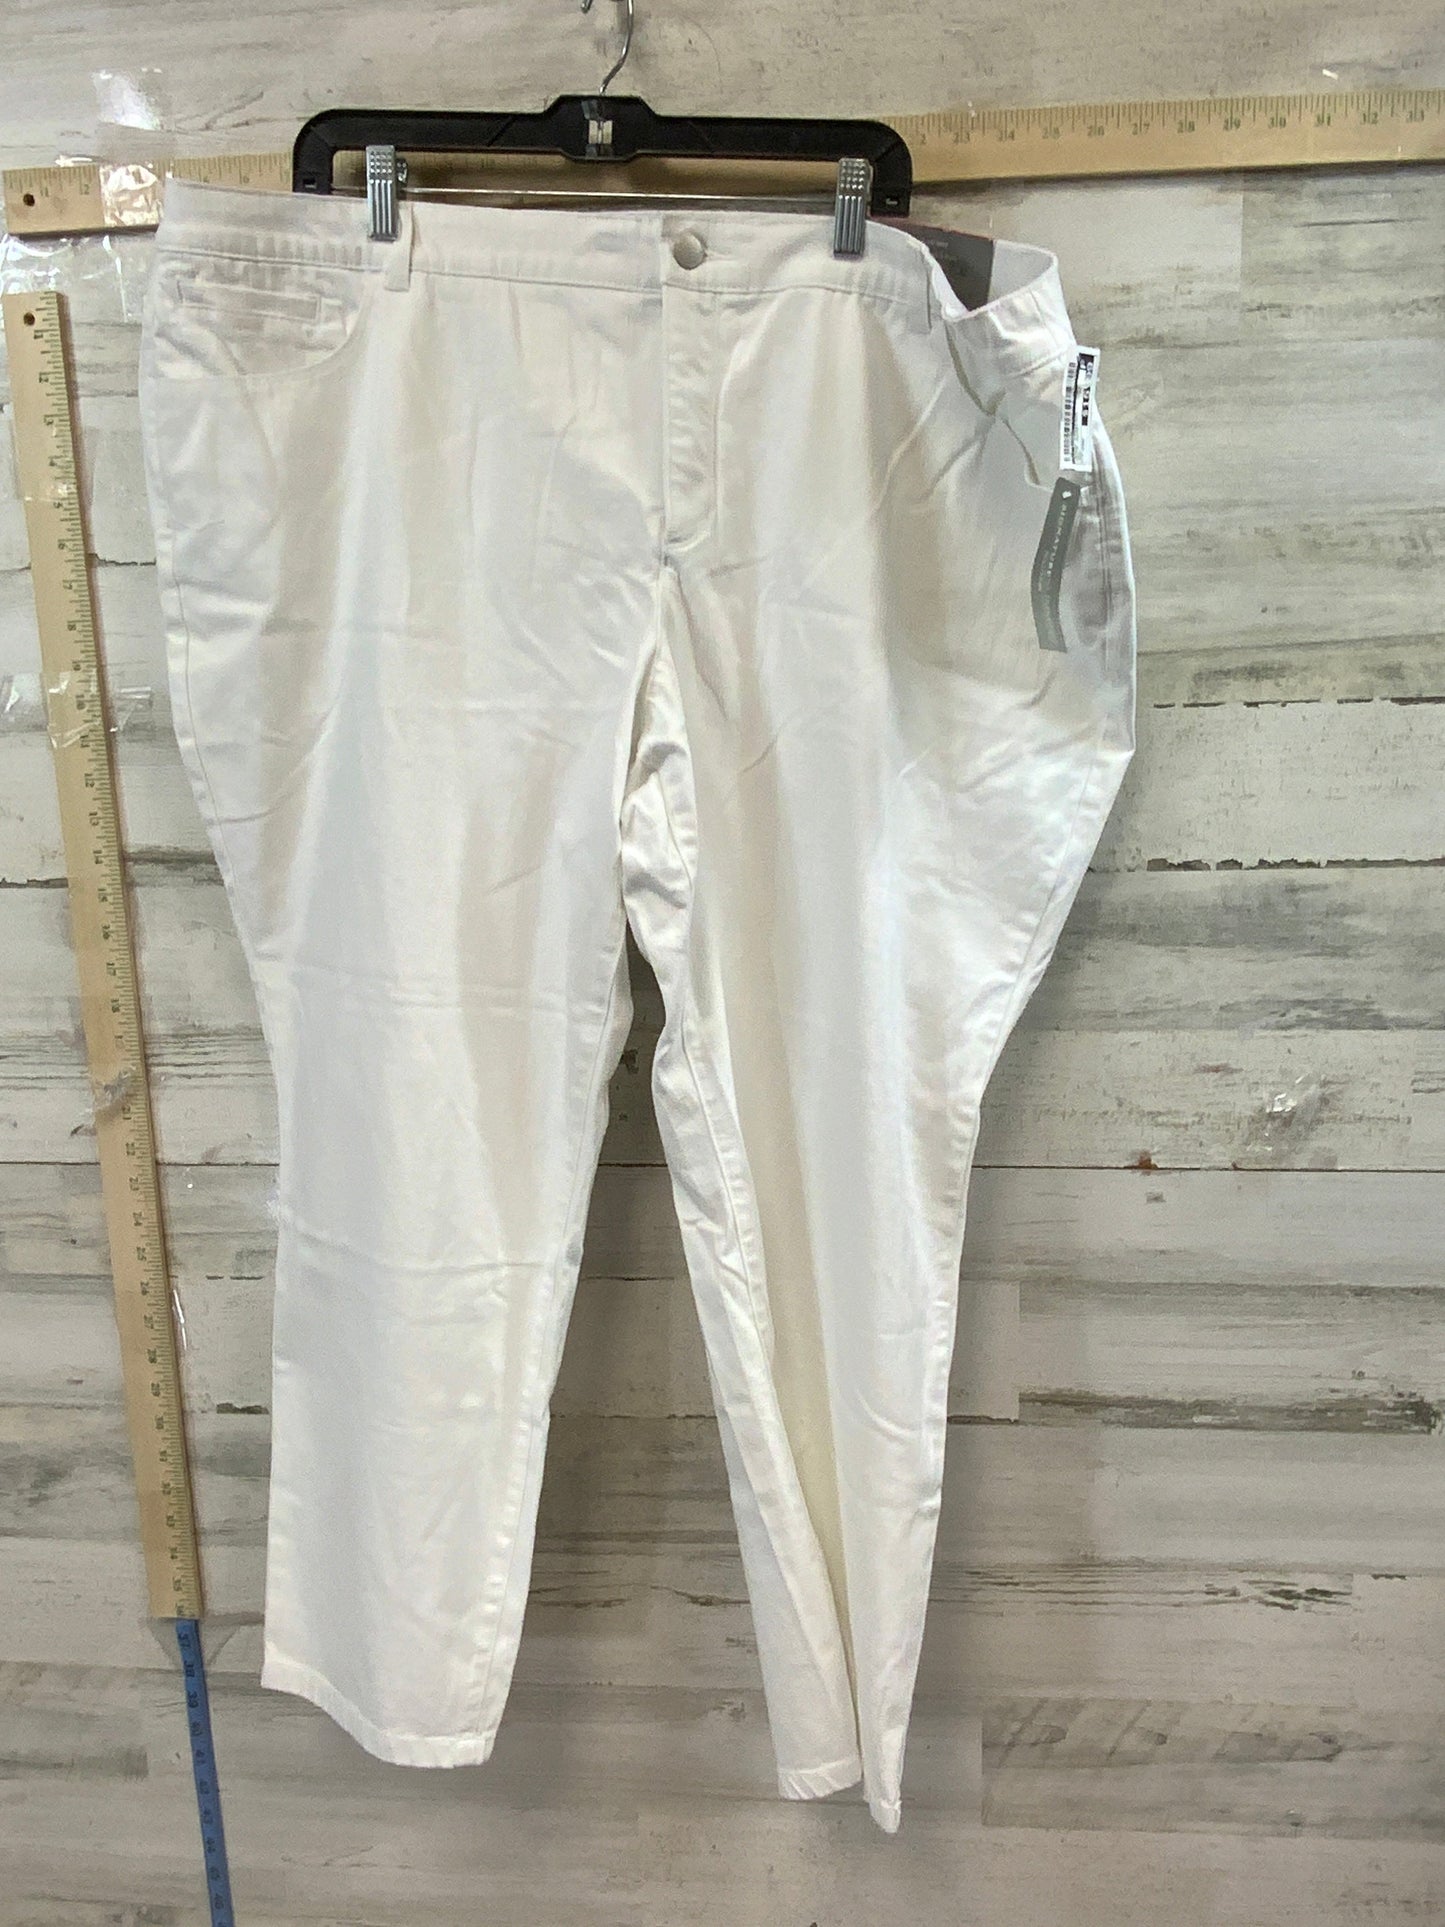 White Denim Jeans Straight Cj Banks, Size 24w